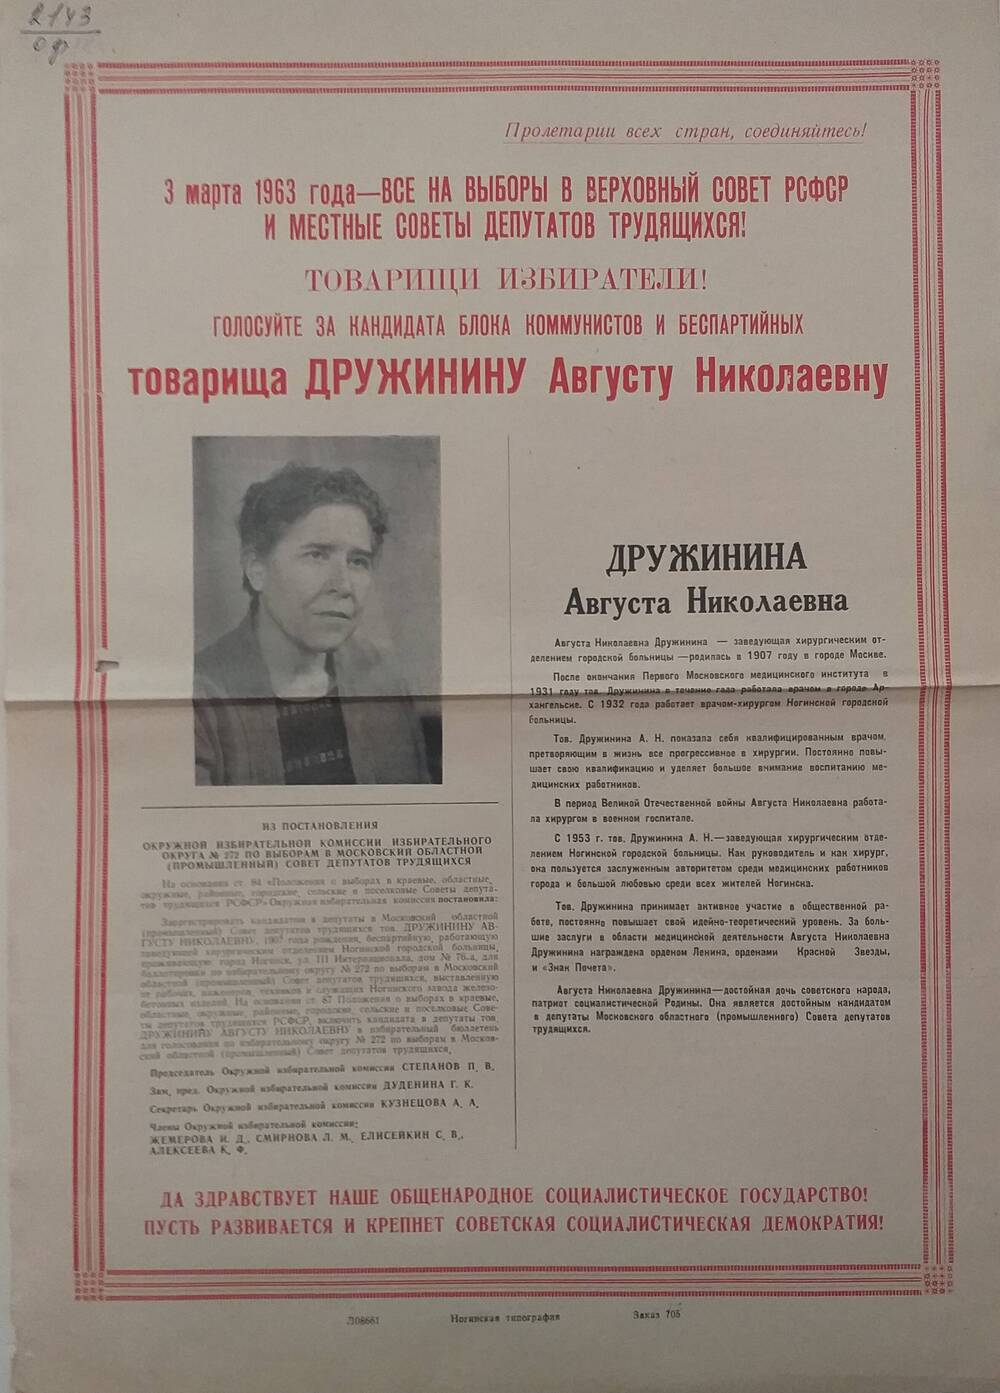 Плакат Призыв к голосованию на выборах 3 марта 1963 года за товарища Дружинину Августу Николаевну - заведующую хирургическим отделением городской больницы, 1963 год.